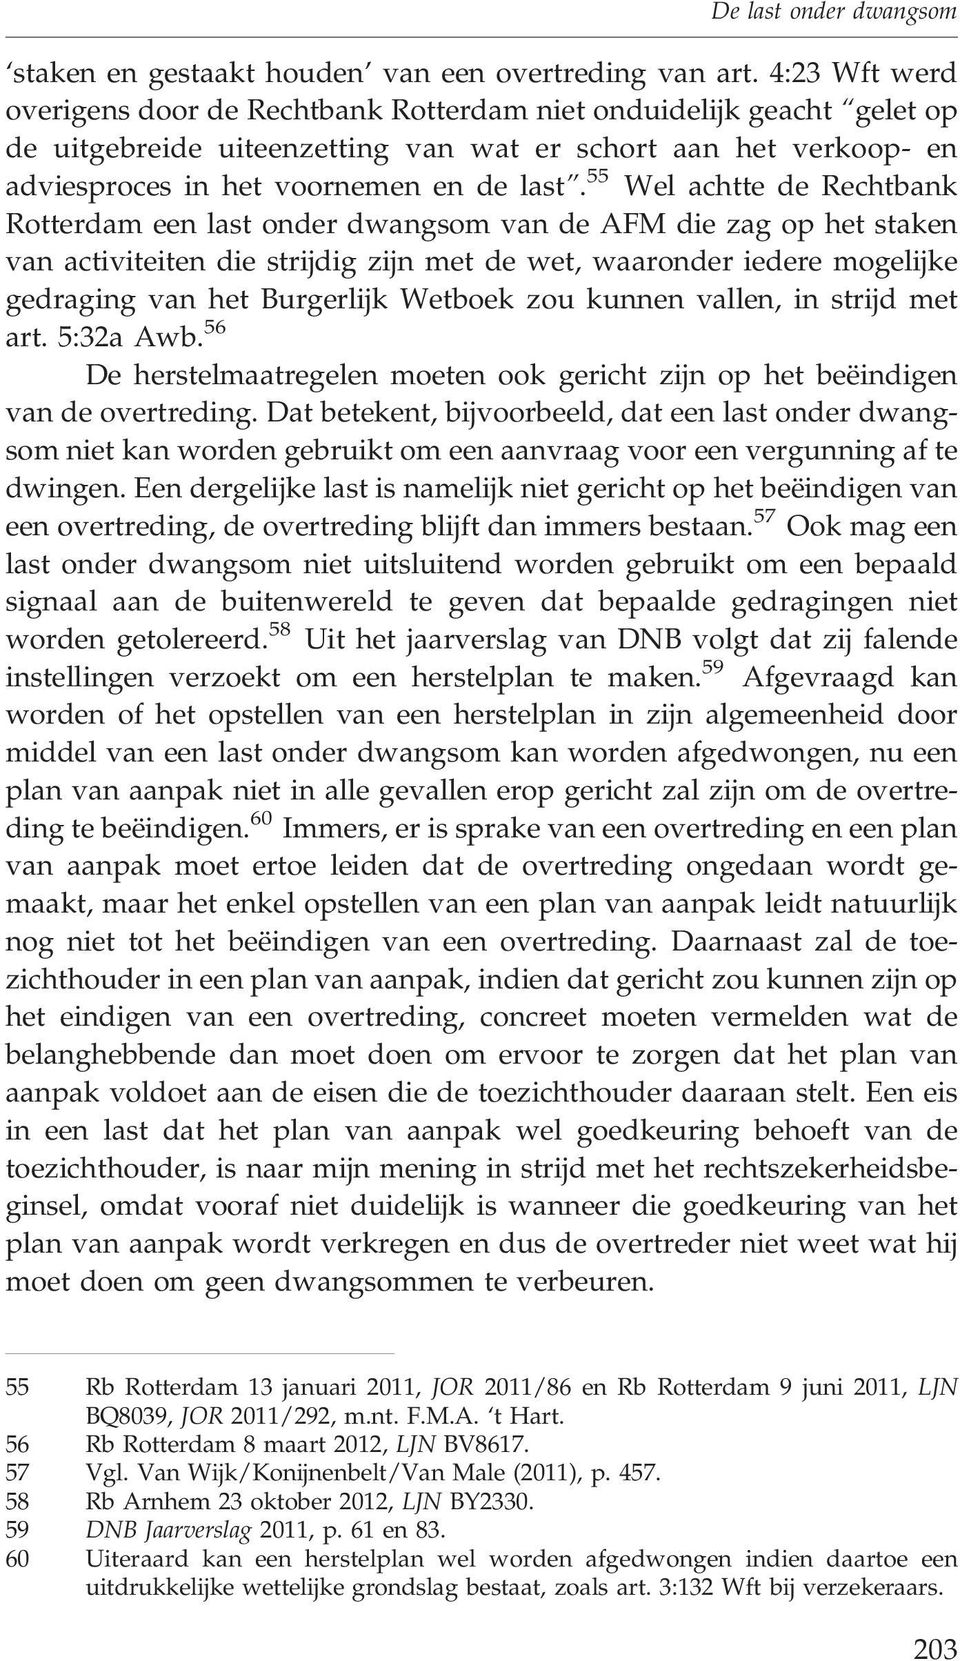 55 Wel achtte de Rechtbank Rotterdam een last onder dwangsom van de AFM die zag op het staken van activiteiten die strijdig zijn met de wet, waaronder iedere mogelijke gedraging van het Burgerlijk